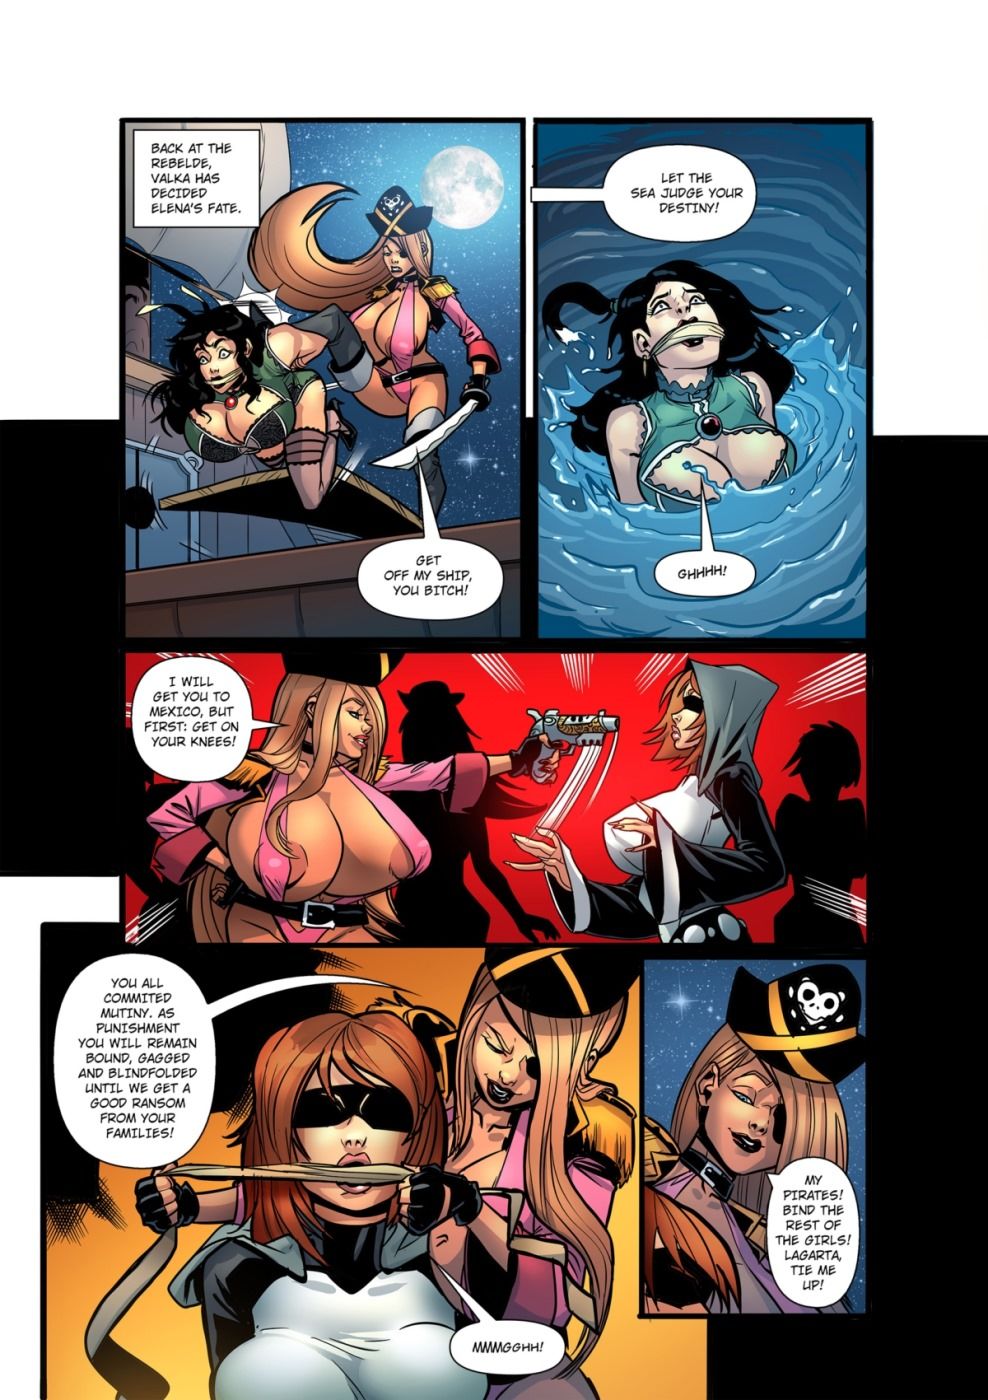 BDSM Fan- Pirata page 1